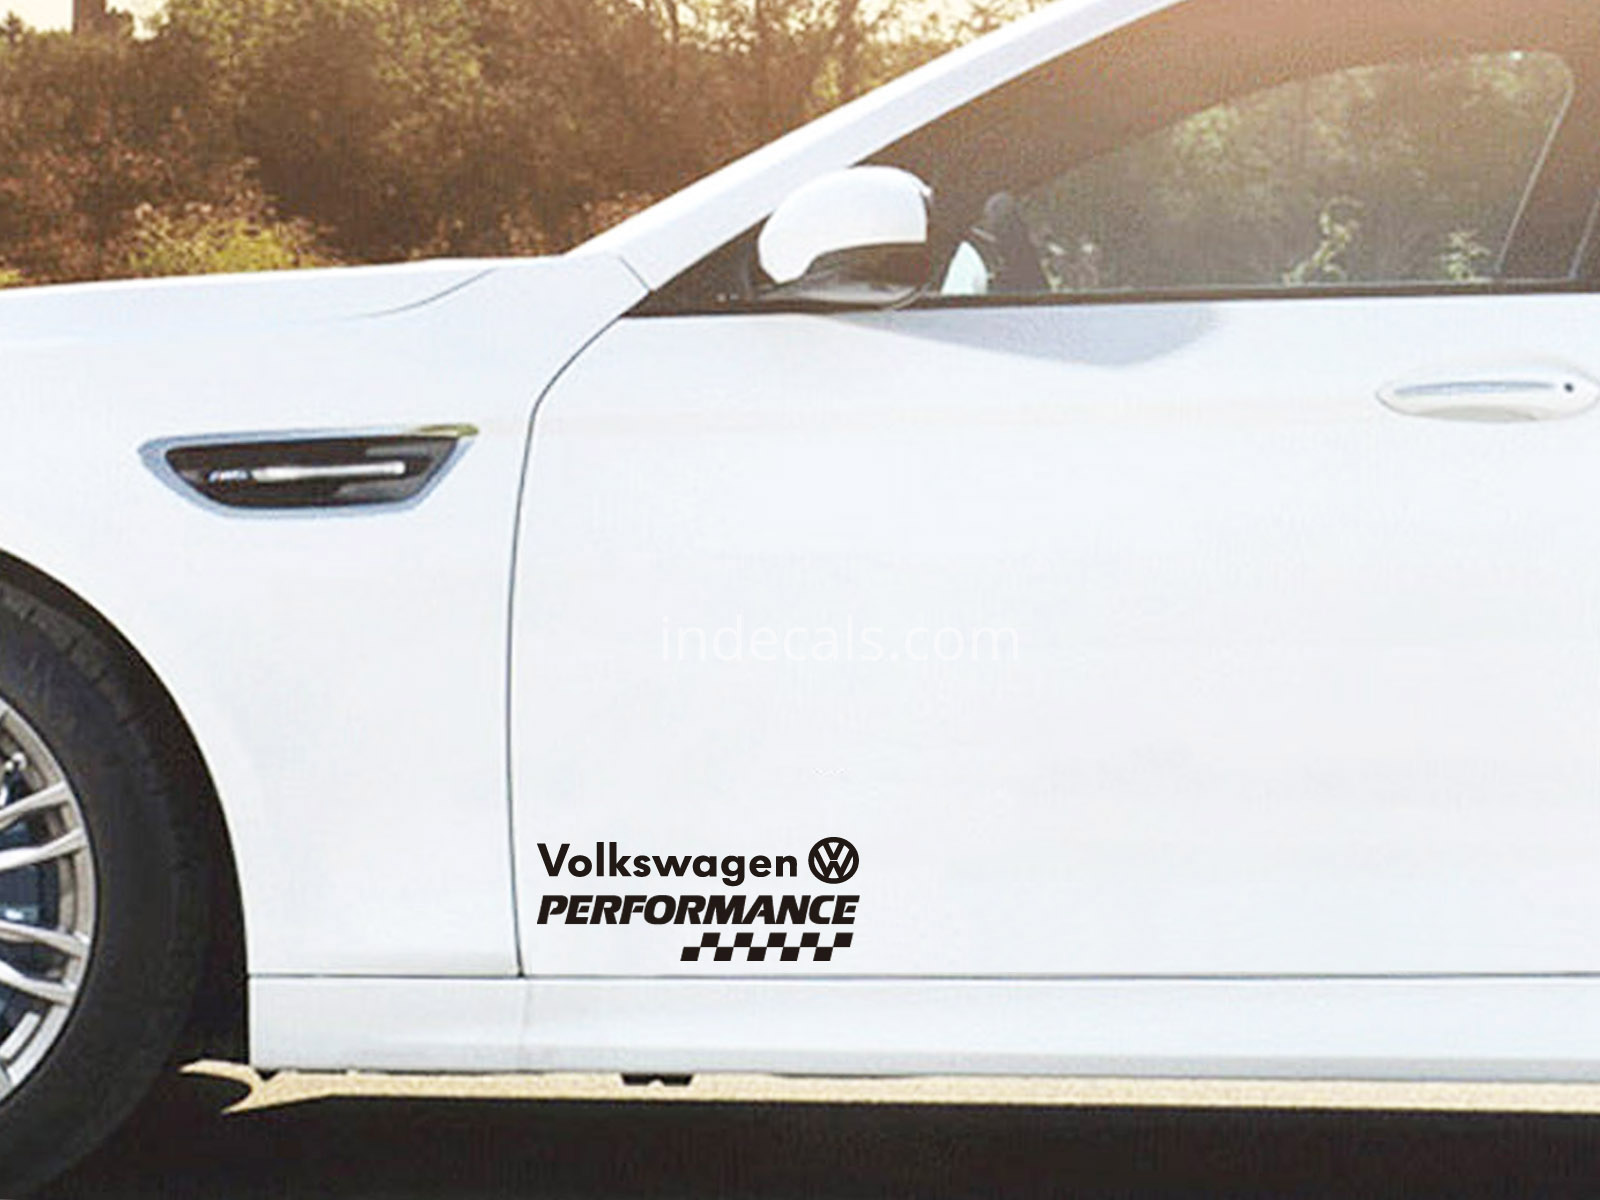 2 x Volkswagen Performance Stickers for Doors - Black